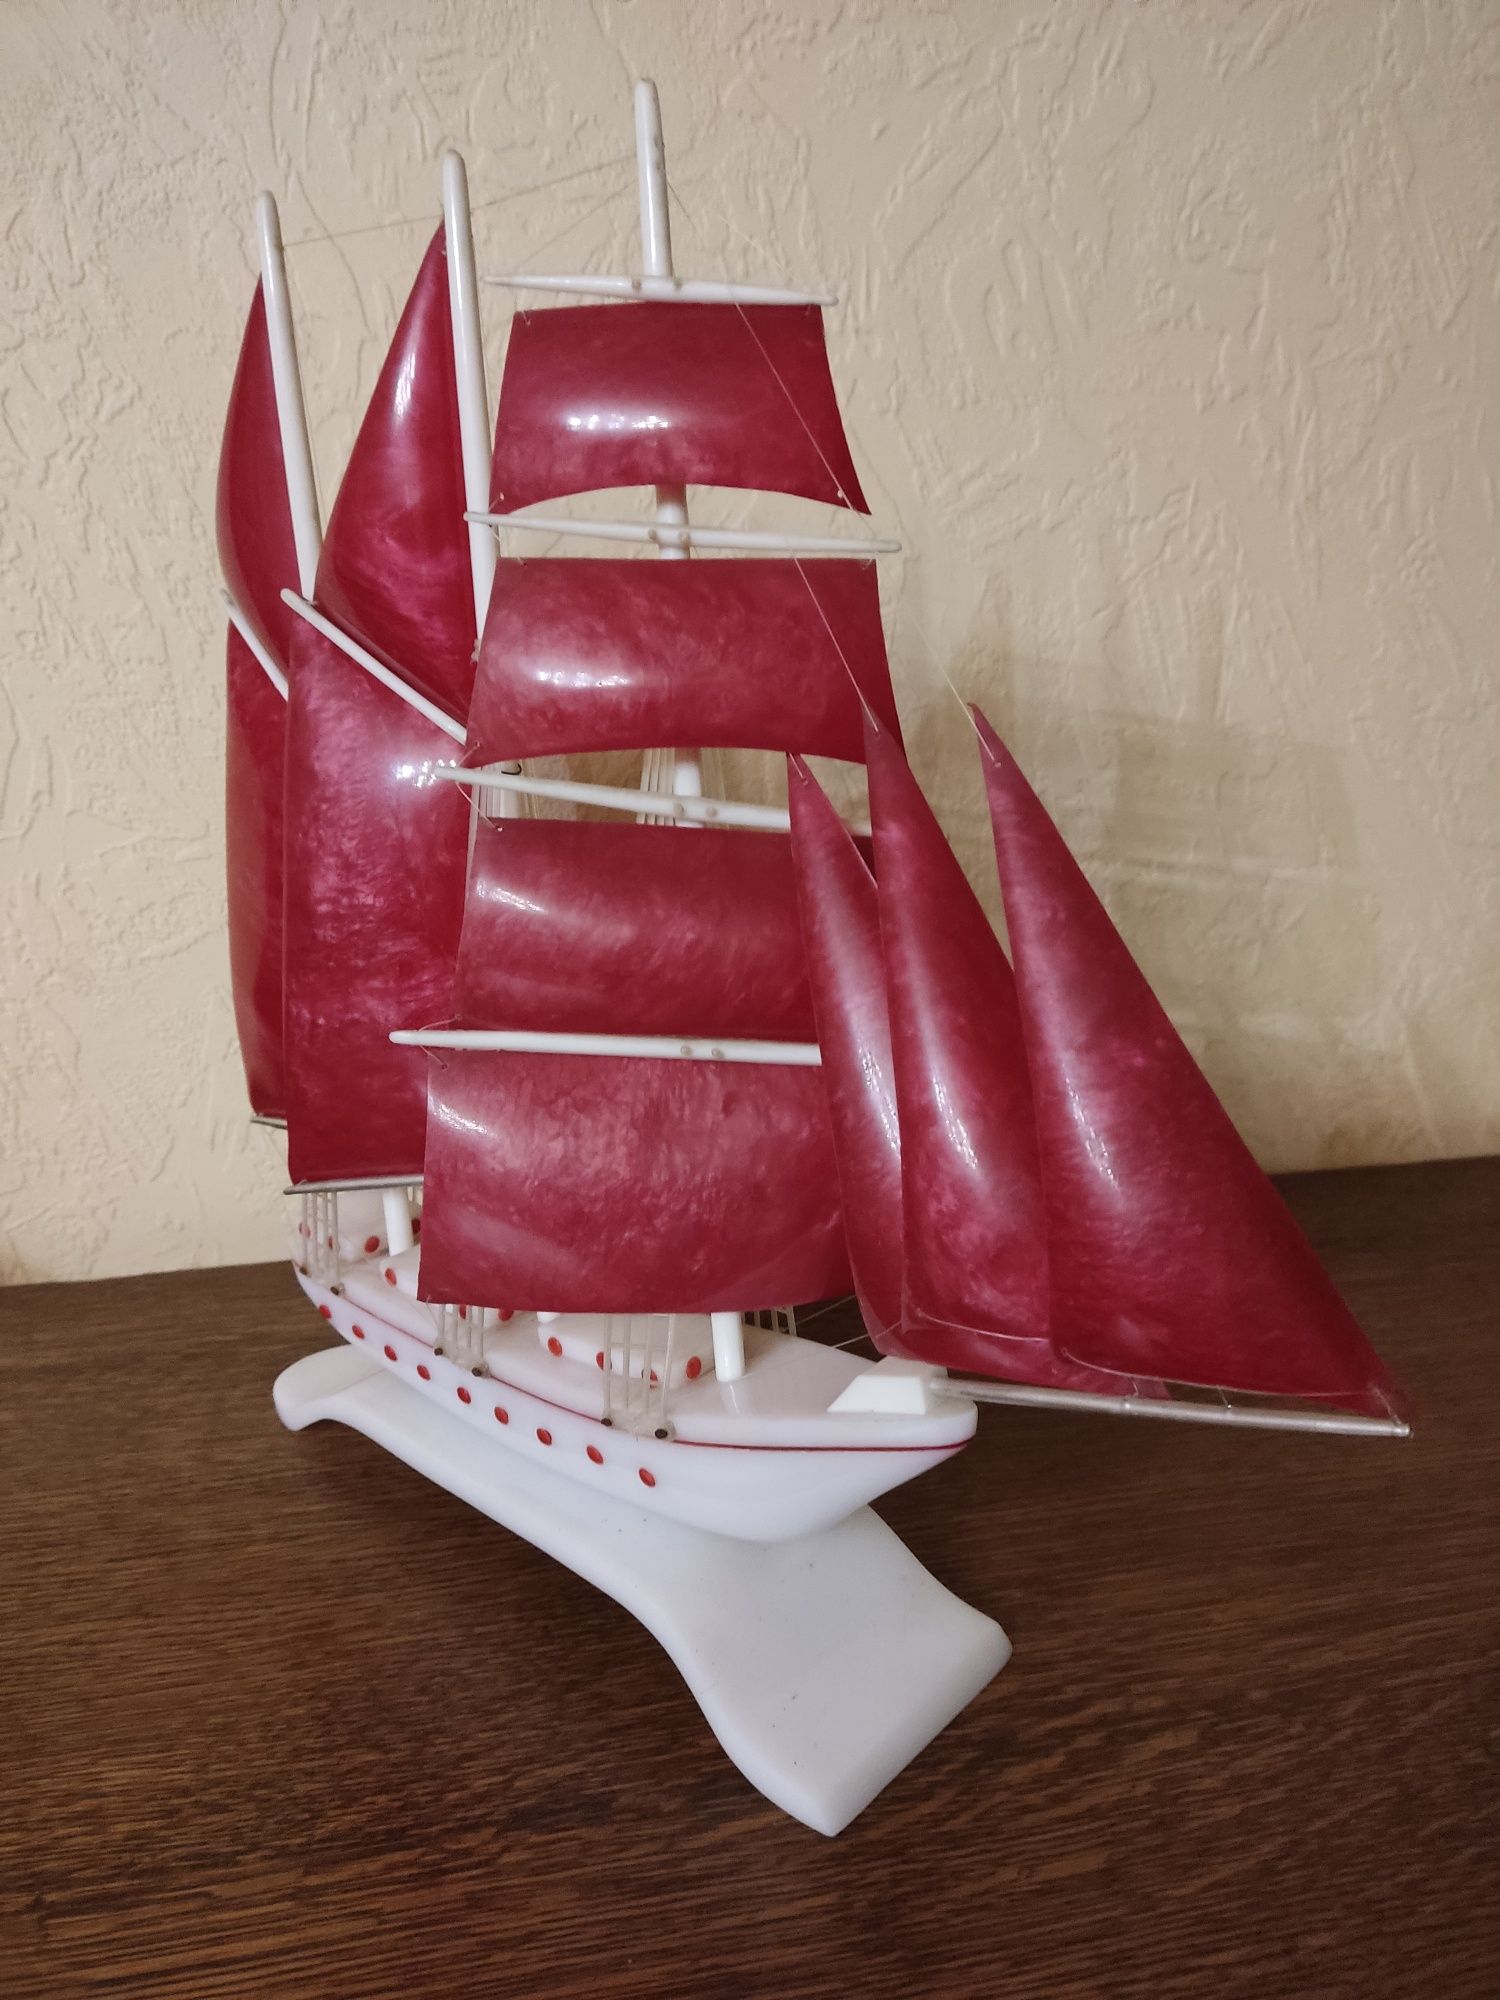 Продам сувенирную модель парусного корабля (фрегат) времён СССР